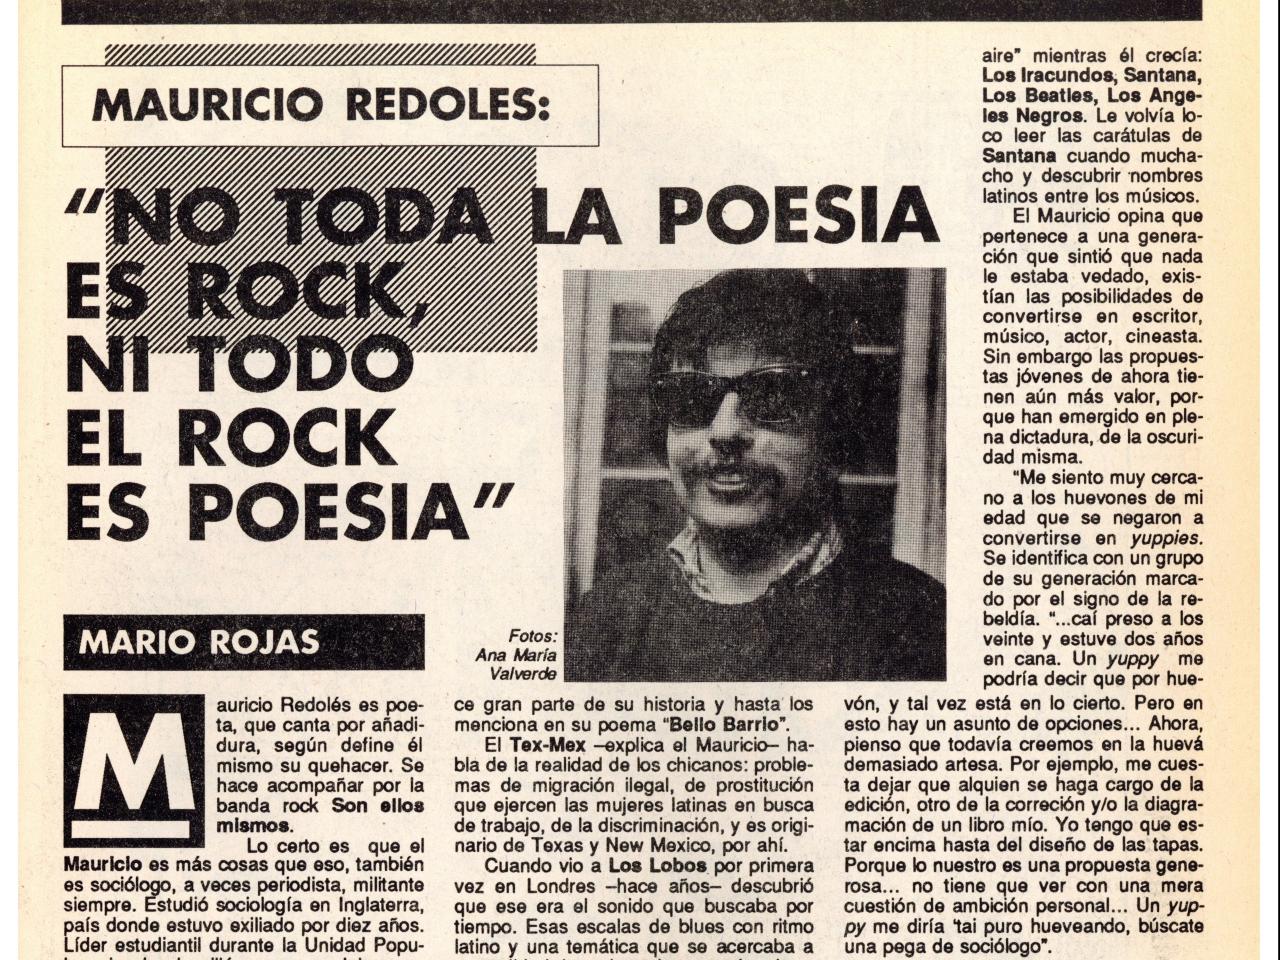 Mauricio Redolés (columna-entrevista por Mario rojas), nº18